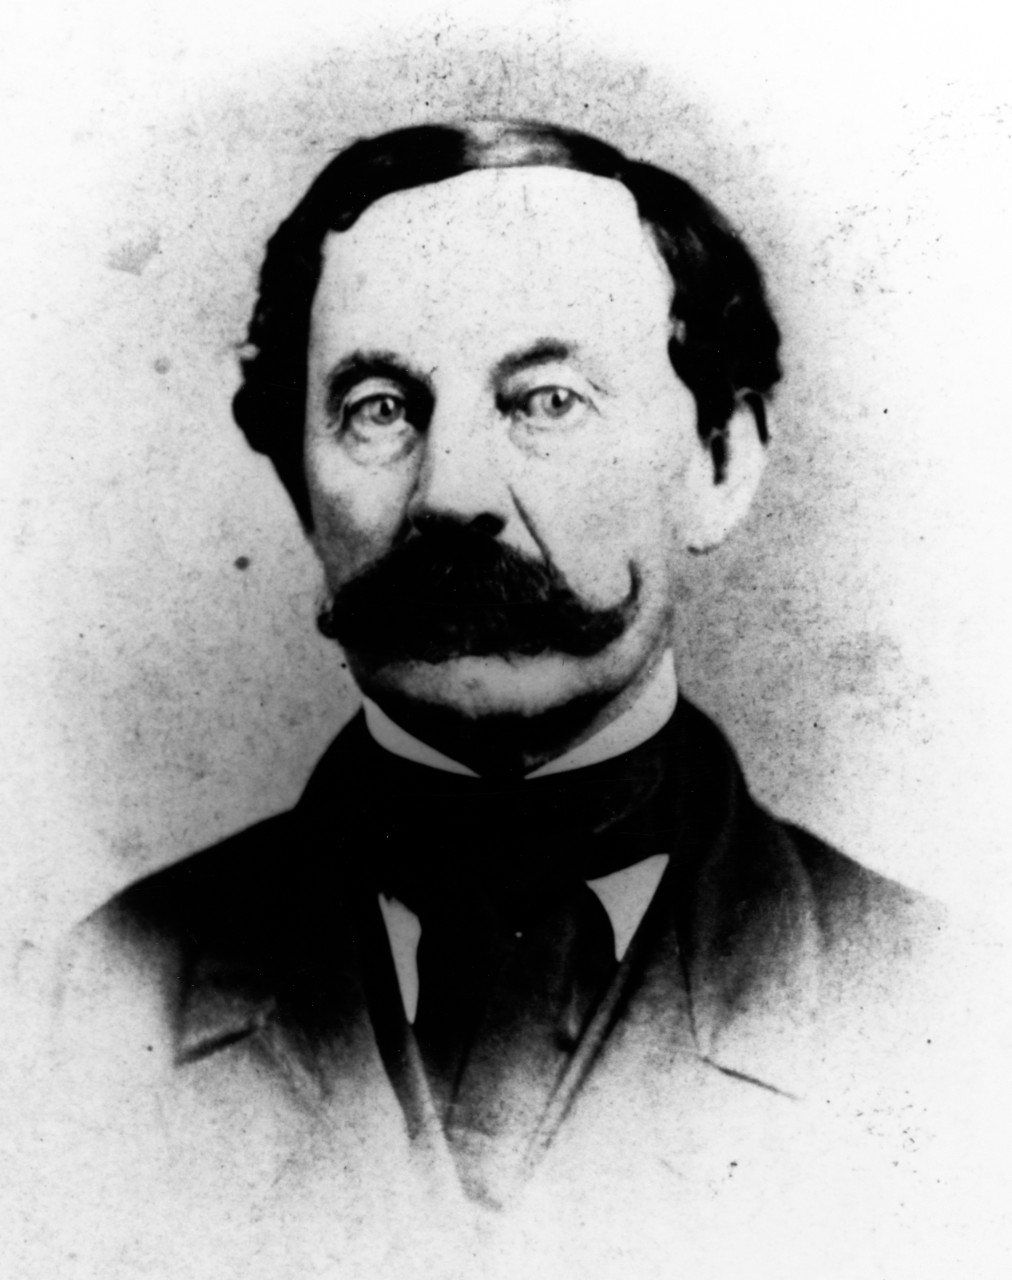 Colonel W.L. Shuttleworth, USMC, circa 1864 photograph. 